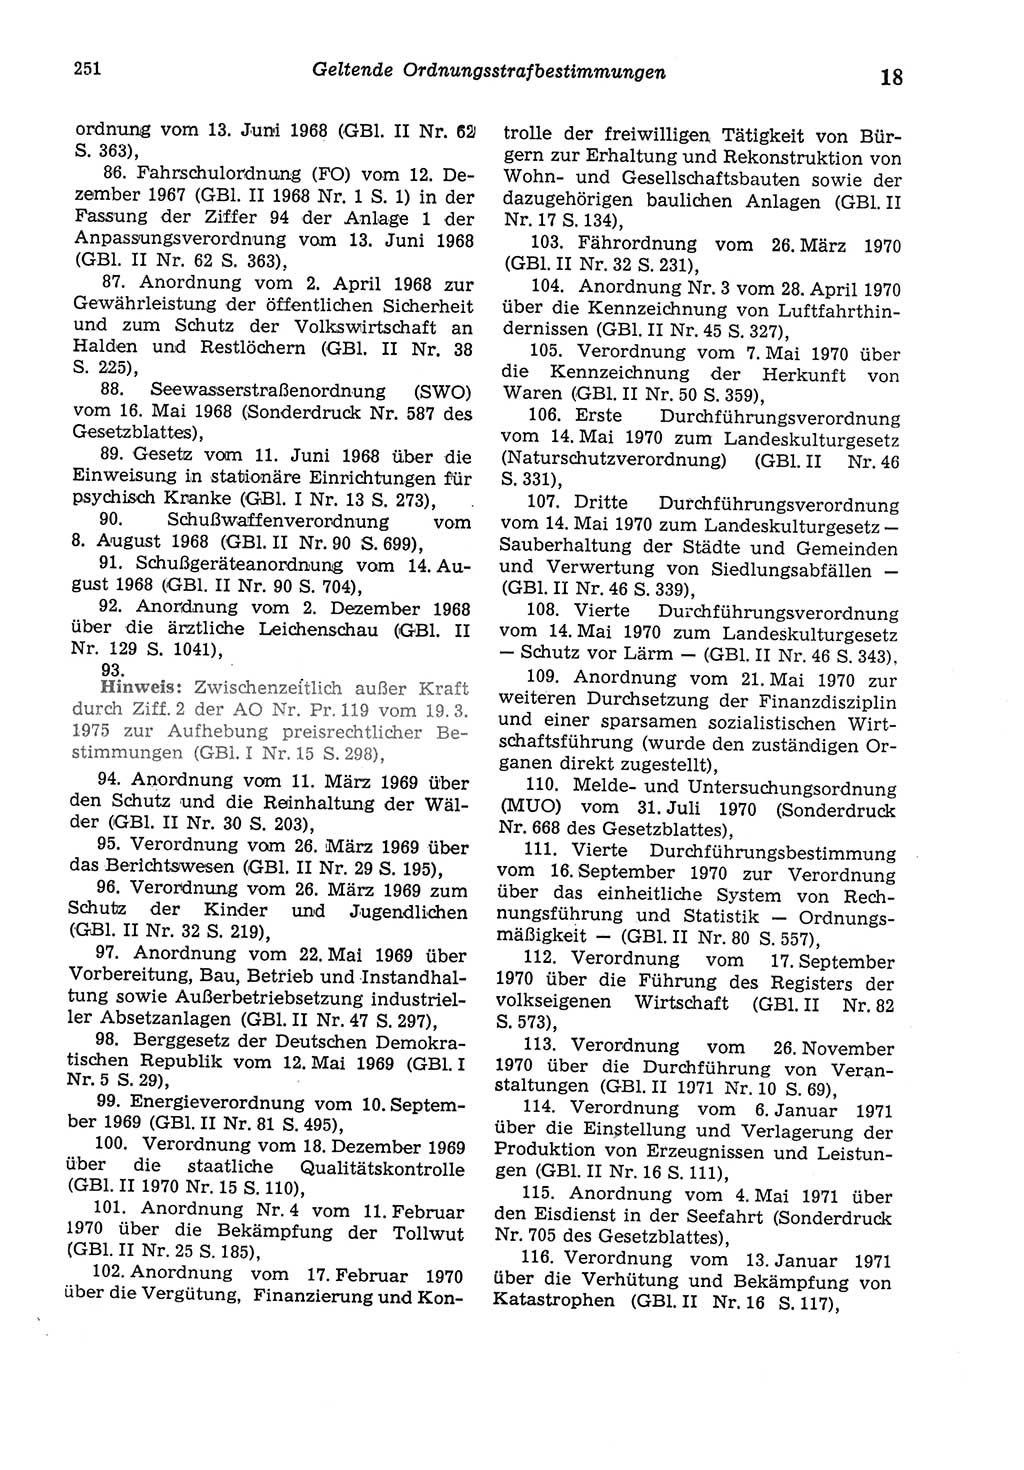 Strafgesetzbuch (StGB) der Deutschen Demokratischen Republik (DDR) und angrenzende Gesetze und Bestimmungen 1975, Seite 251 (StGB DDR Ges. Best. 1975, S. 251)